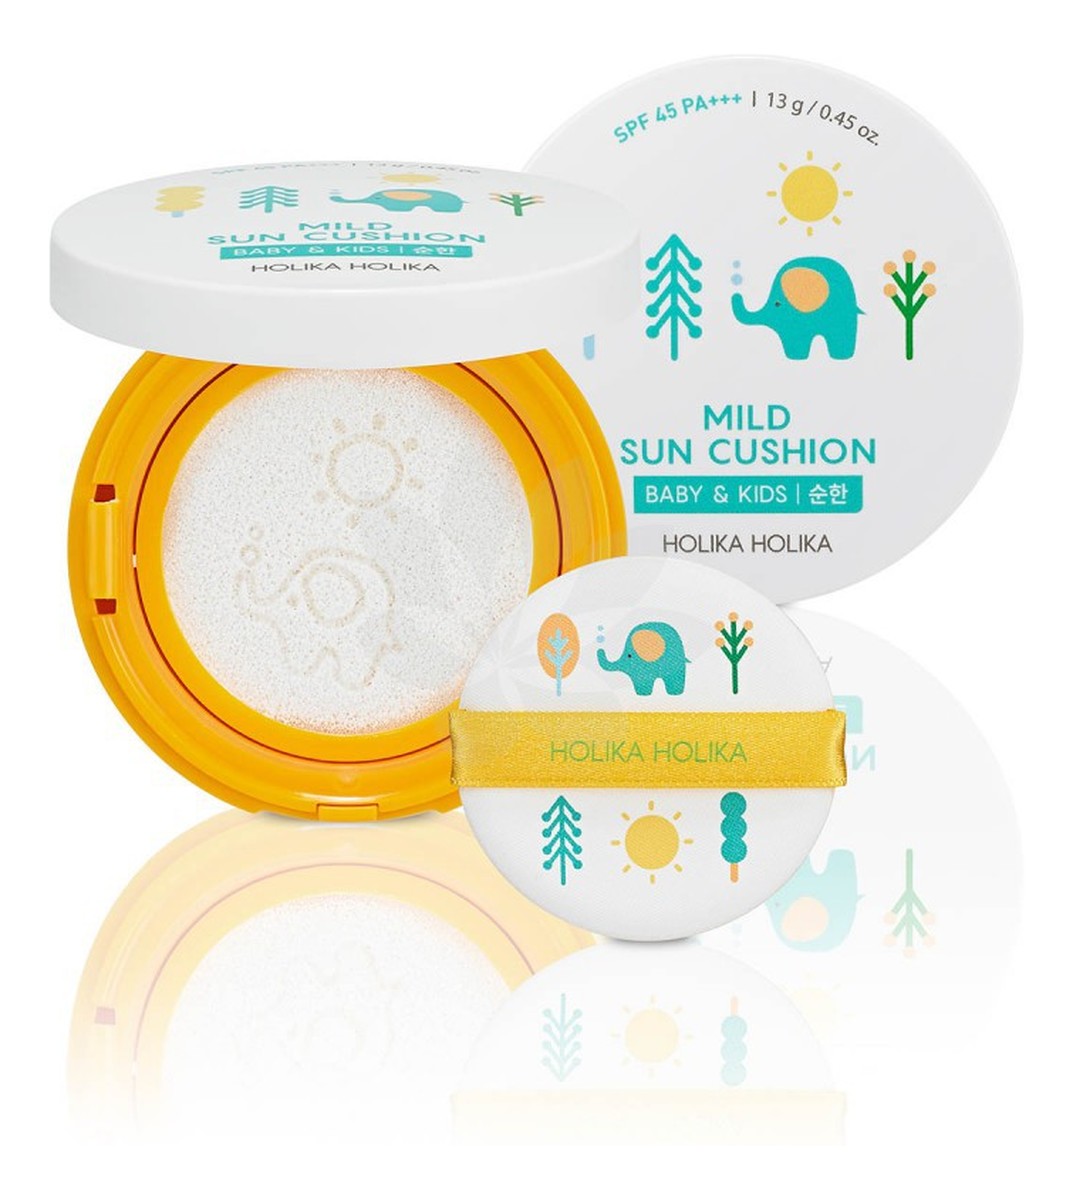 Baby & Kids SPF45 kompaktowy krem przeciwsłoneczny w poduszeczce